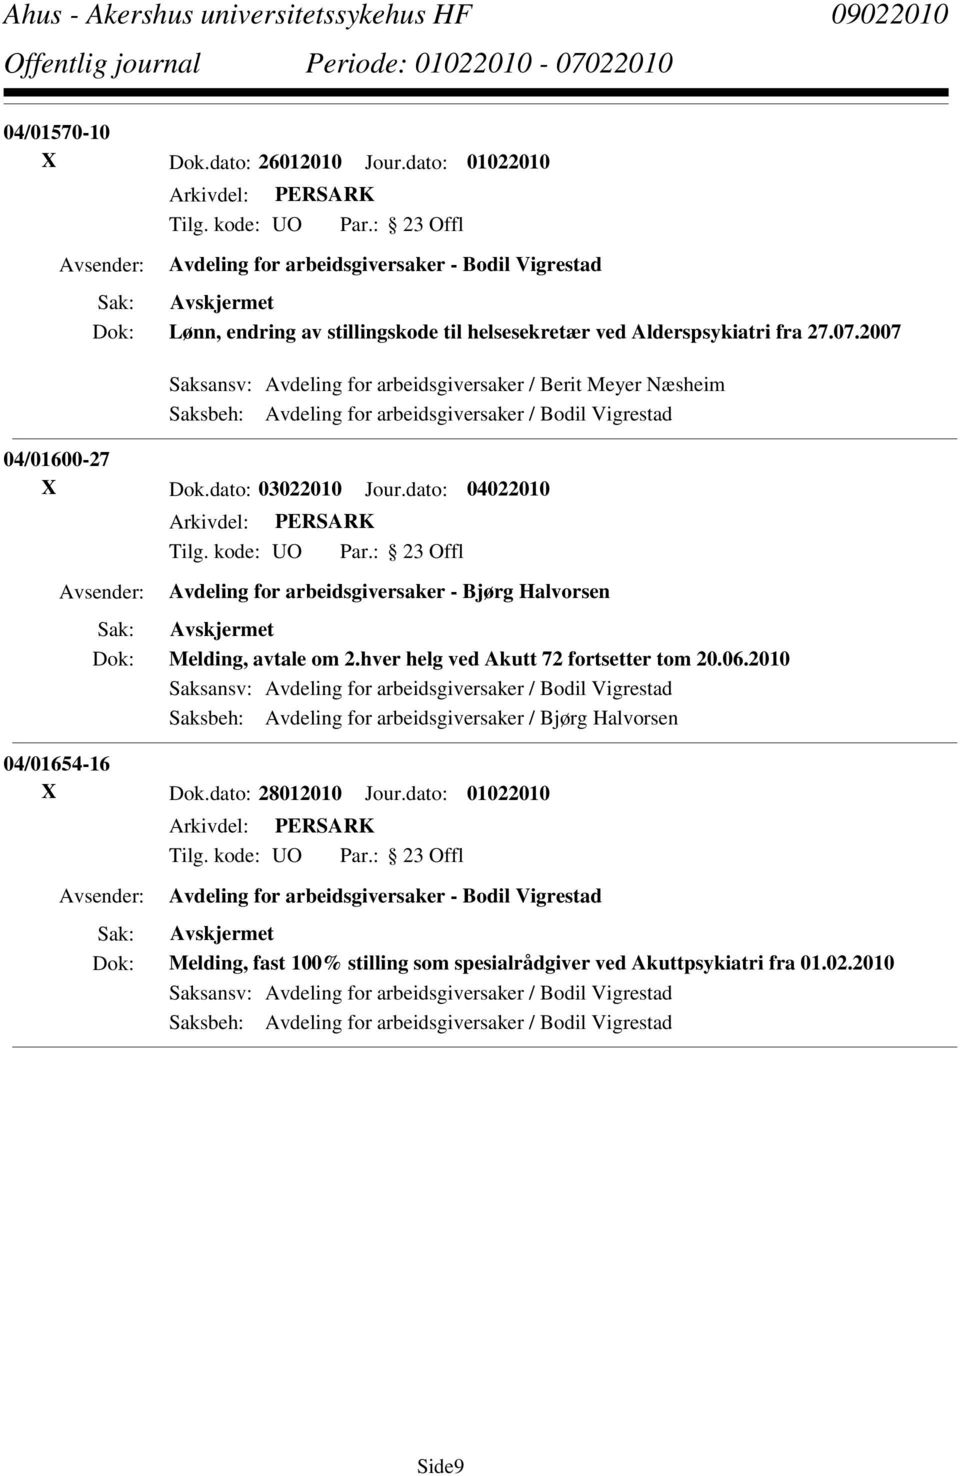 dato: 04022010 Avdeling for arbeidsgiversaker - Bjørg Halvorsen Melding, avtale om 2.hver helg ved Akutt 72 fortsetter tom 20.06.